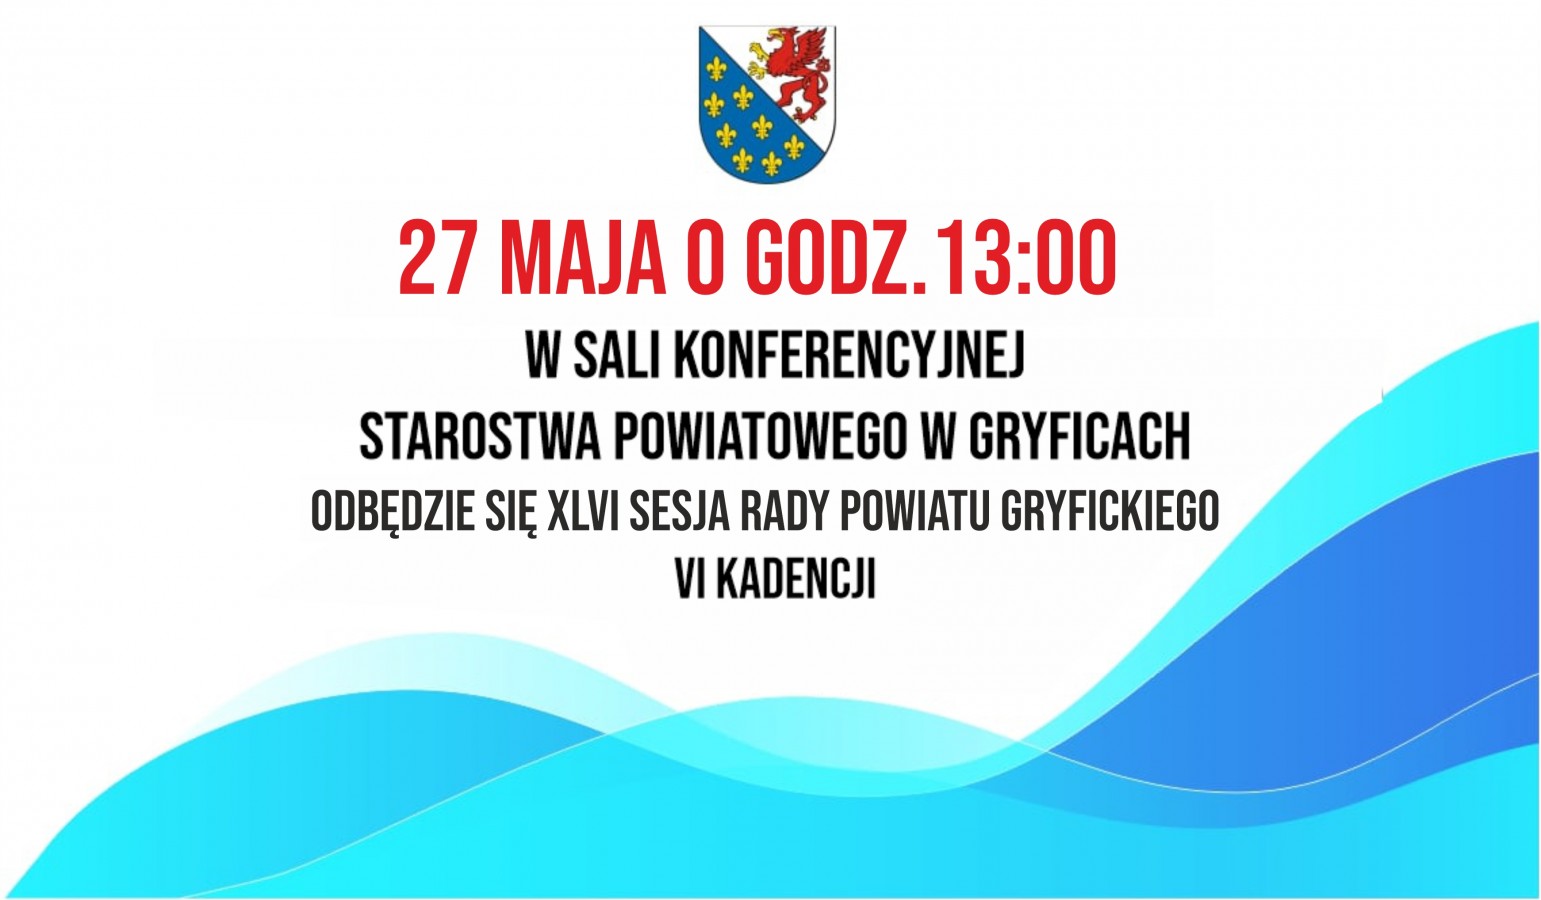 XLVI Sesja Rady Powiatu Gryfickiego VI Kadencji